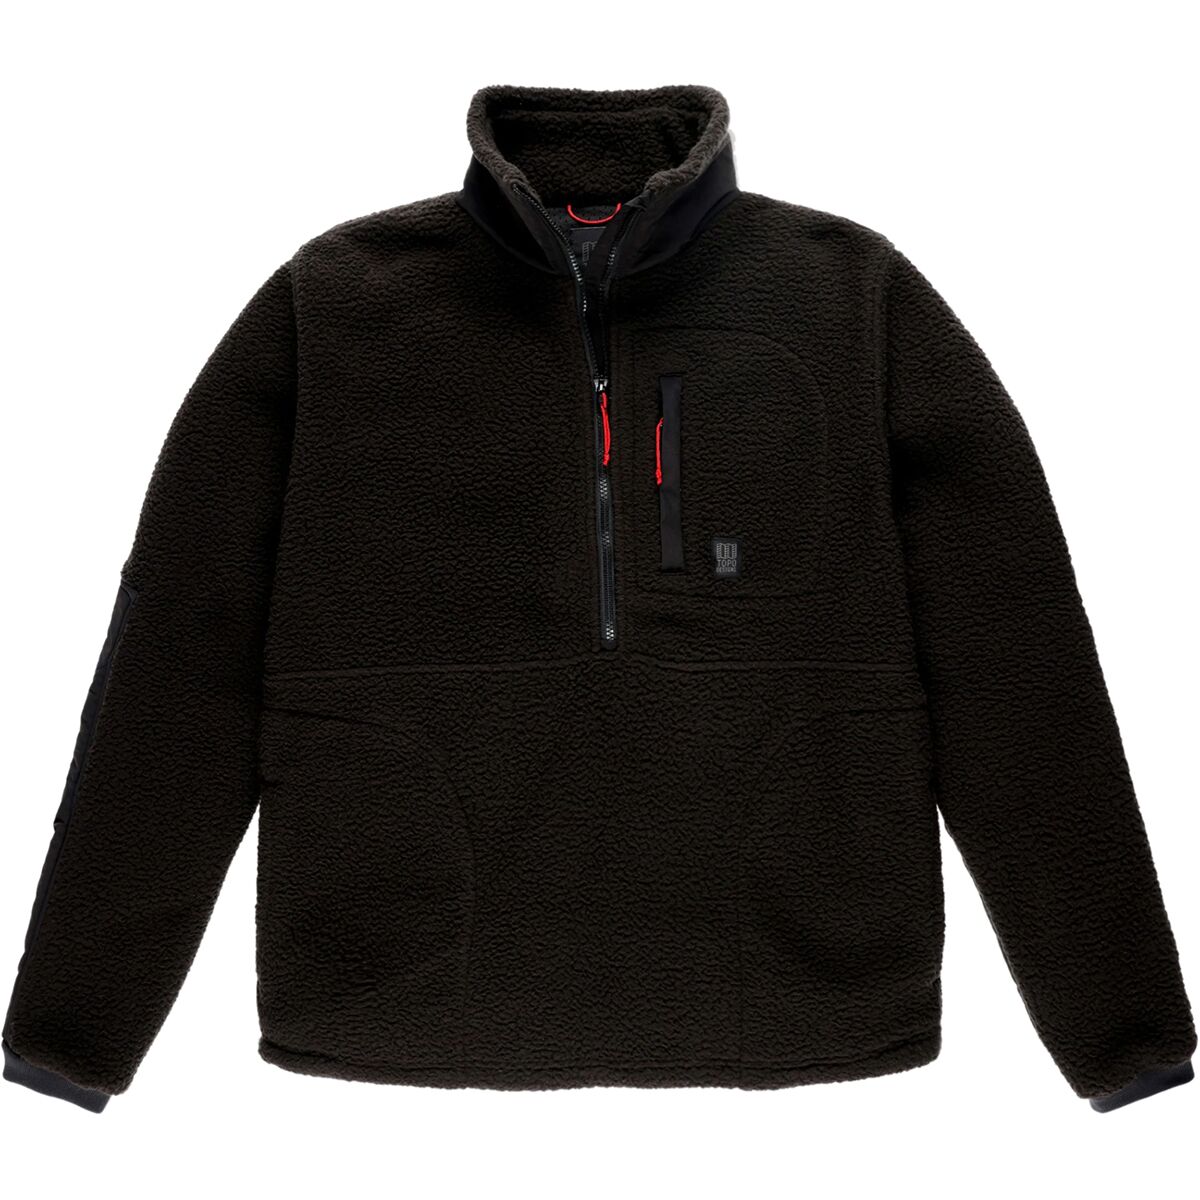 Topo Designs Mountain Fleece Pullover Jacket - Men's - Clothing